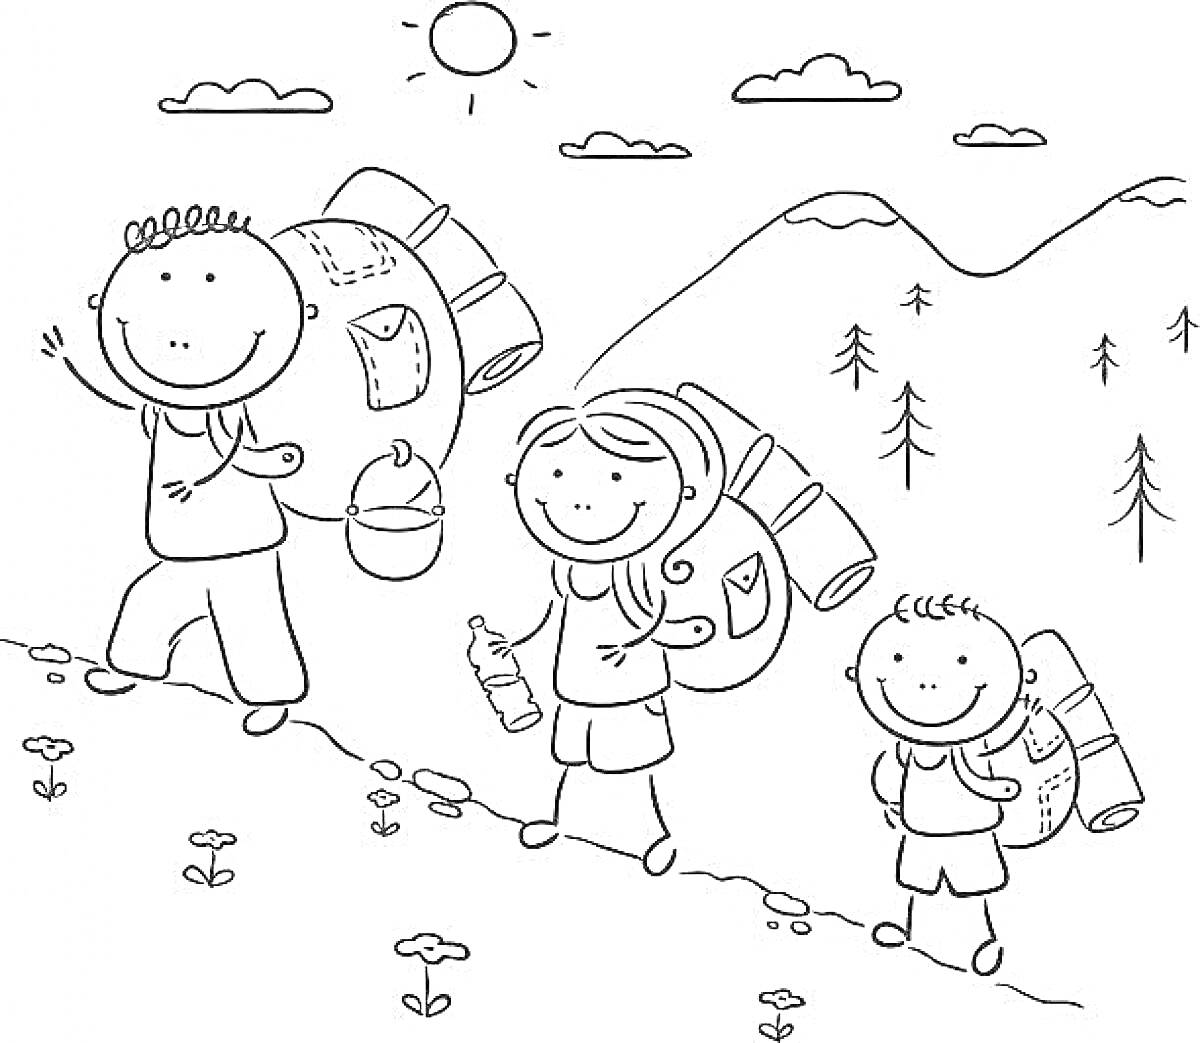 Раскраска Поход с рюкзаками в горах (трое детей с рюкзаками идут по склону, несут бутылки и посуду, на заднем плане солнце, облака, деревья и горы)